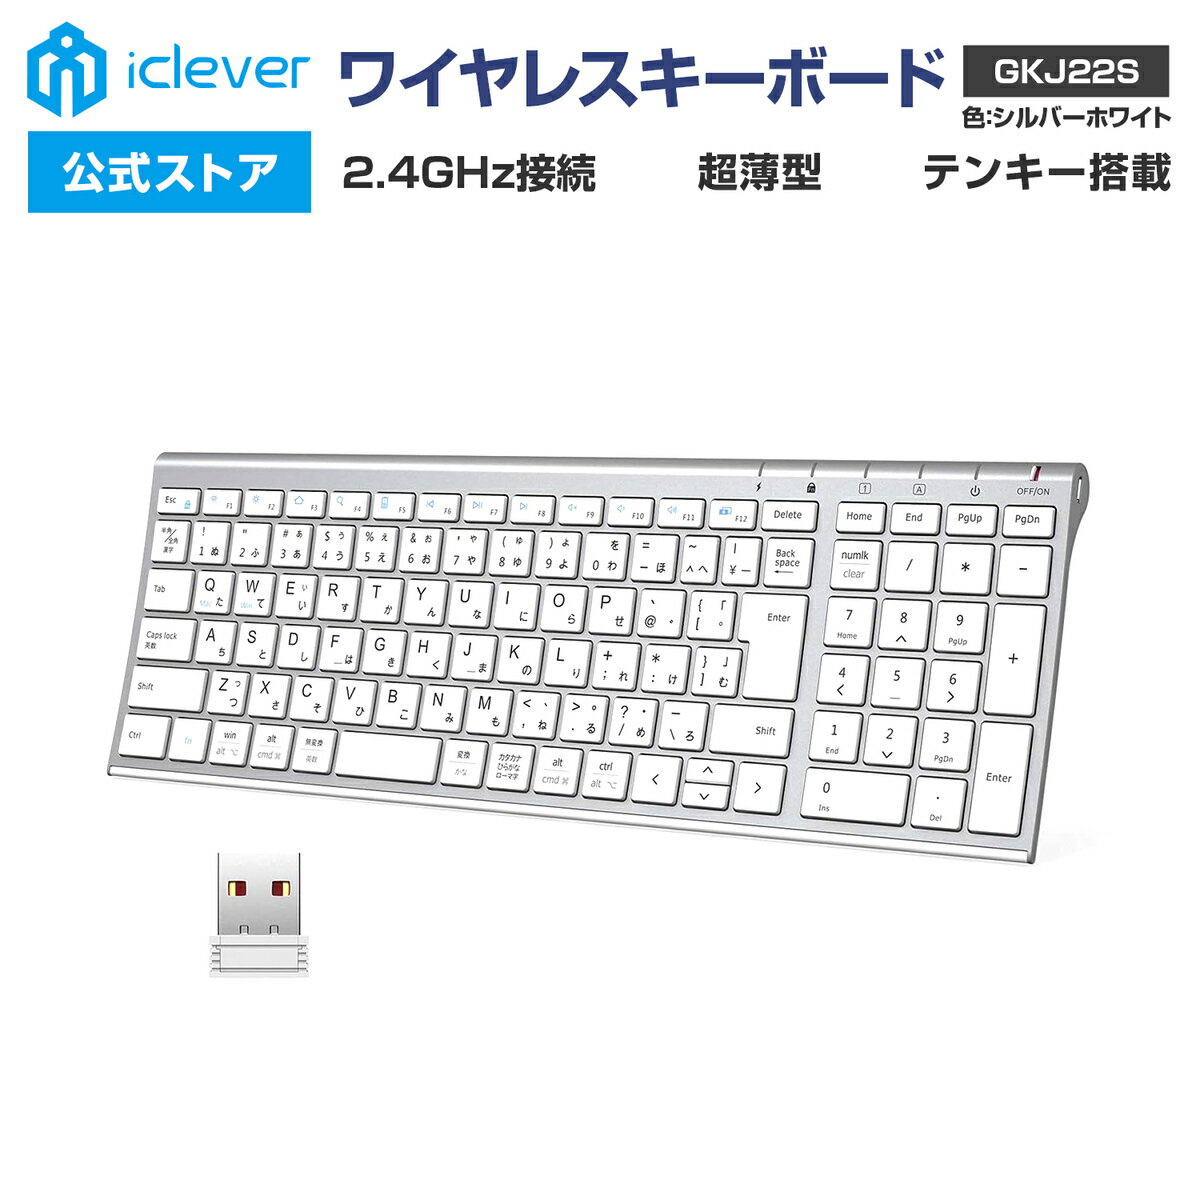 【iClever公式】 【お買い物マラソン P20倍】 ワイヤレスキーボード GKJ22S 2.4GHz接続 USBレシーバー接続 テンキー搭載 日本語配列 超薄型 パンタグラフ式 スタイリッシュ ガジェット 新生活 …